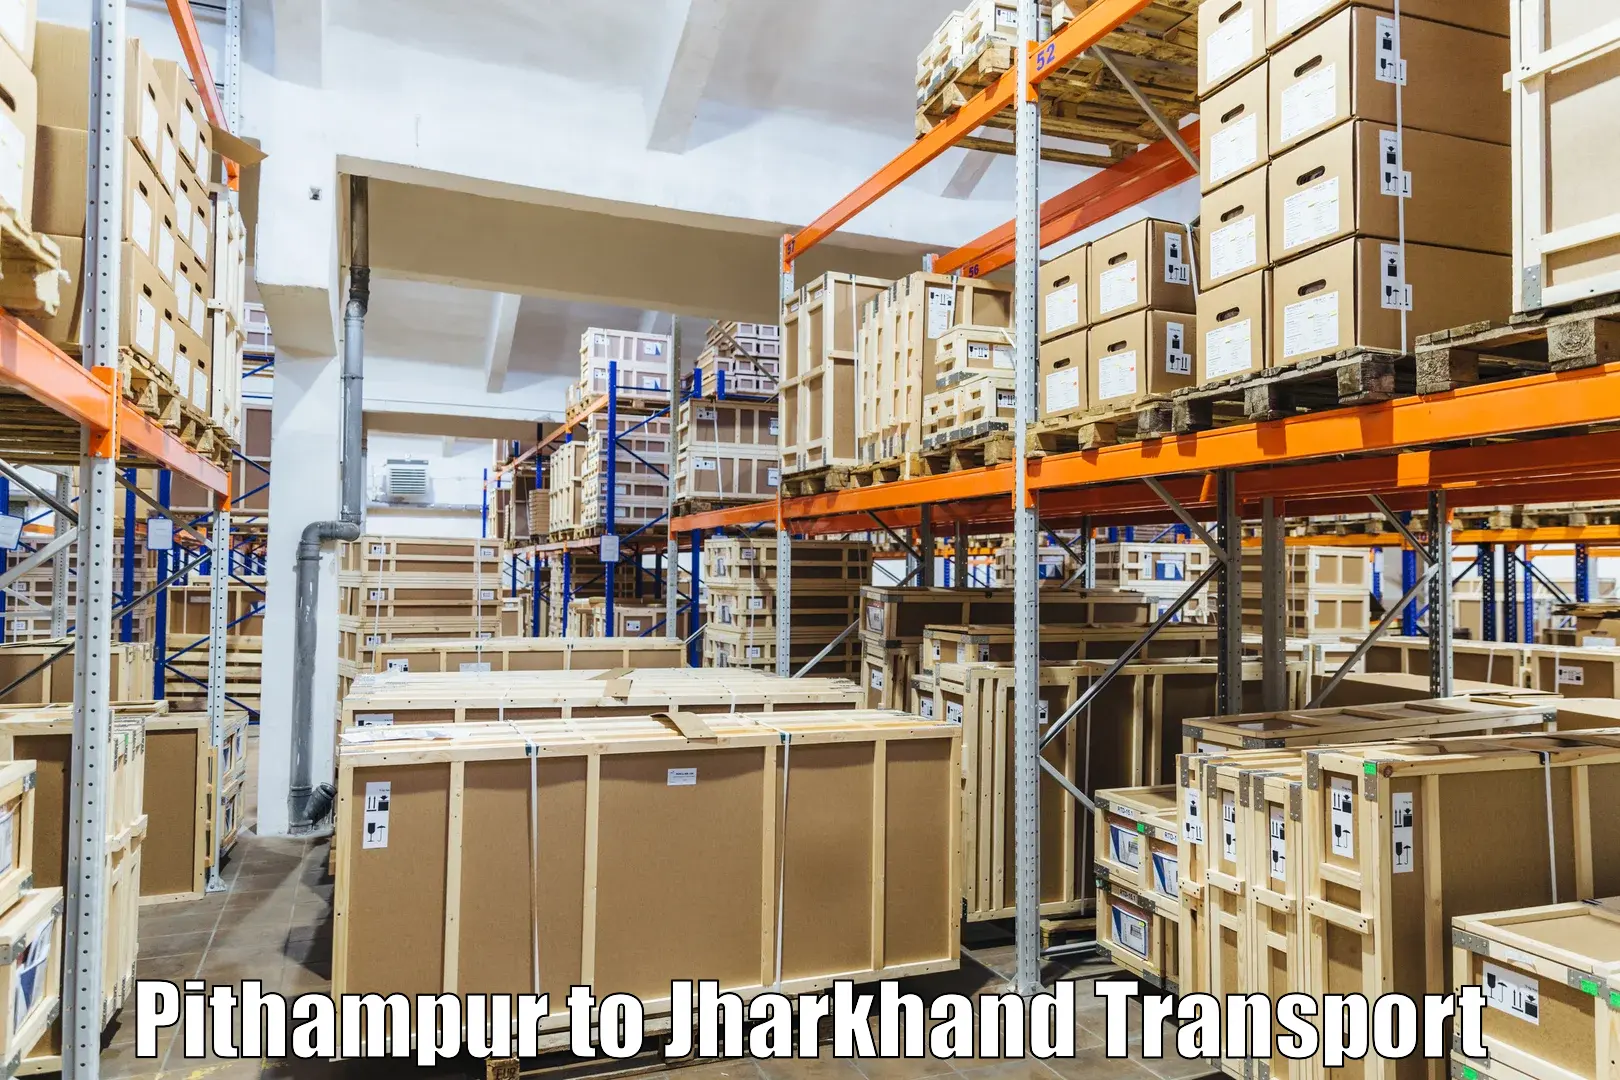 Online transport Pithampur to Barwadih